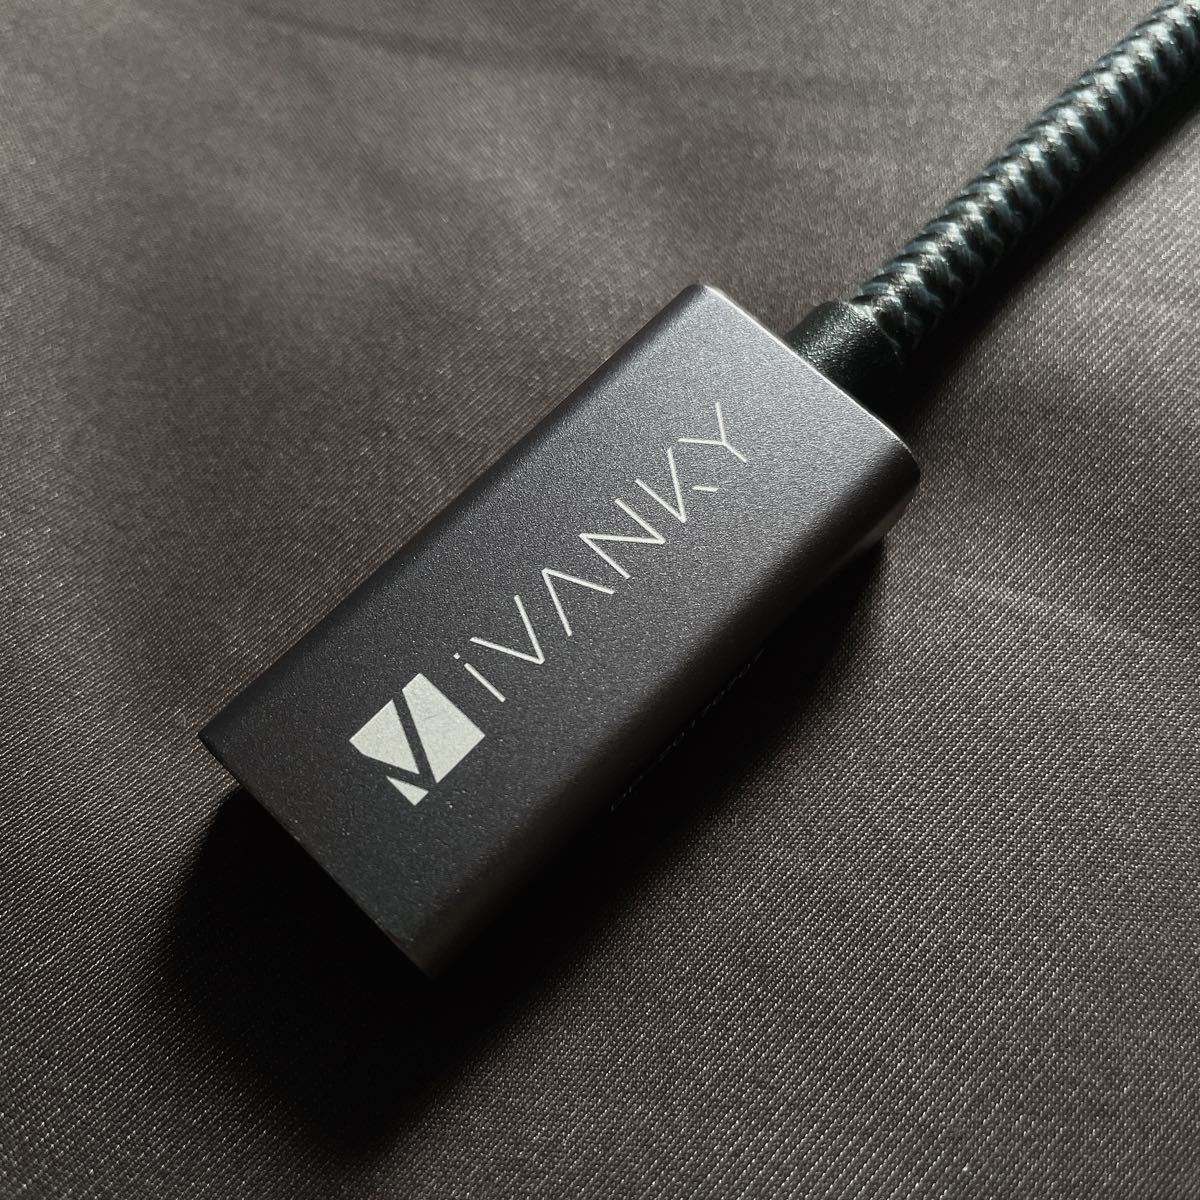 【最終価格】IVANKY Mini DisplayPort HDMI 変換アダプタ